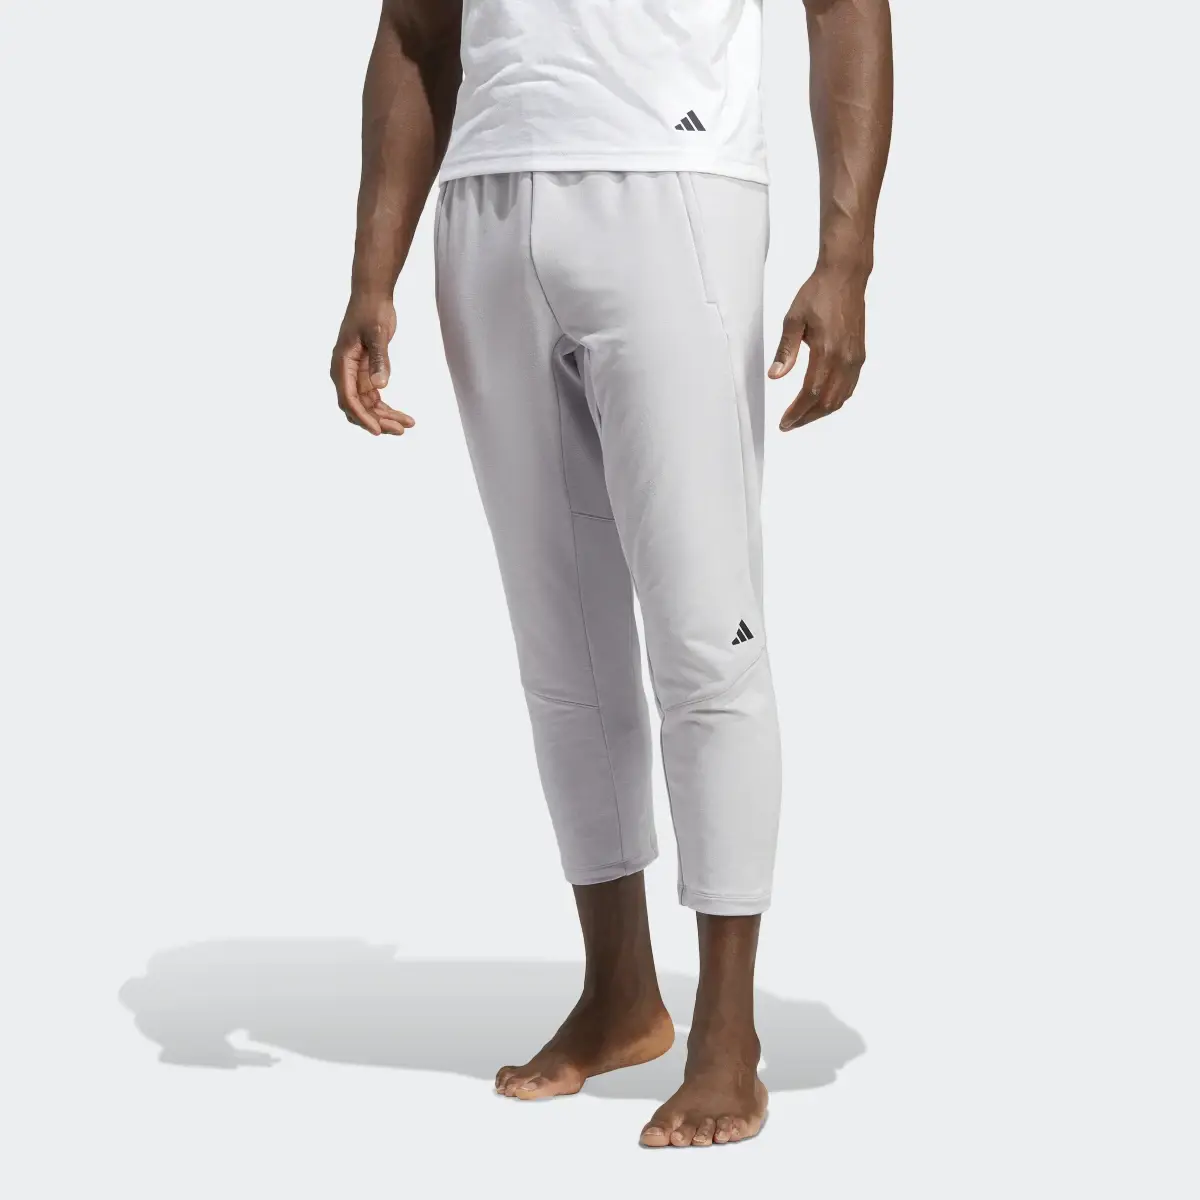 Adidas Designed for Training Yoga 7/8 Training Pants. 1